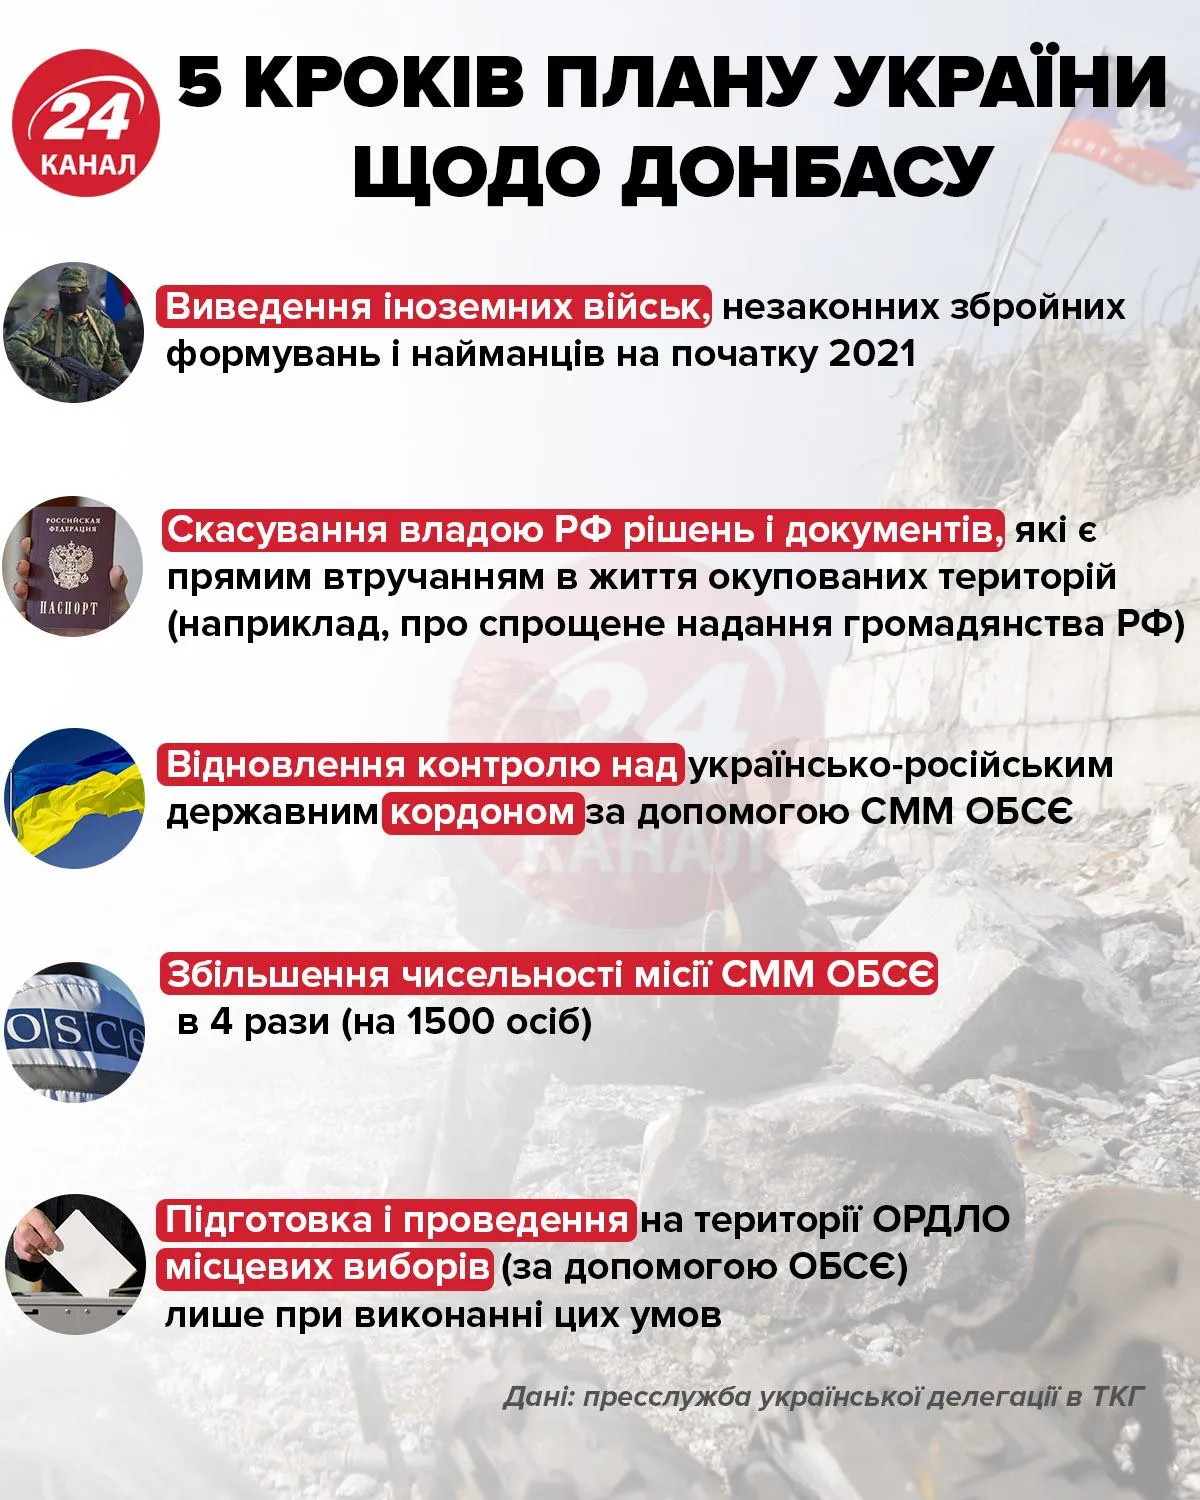 5 кроків плану України щодо Донбасу інфографіка 24 канал